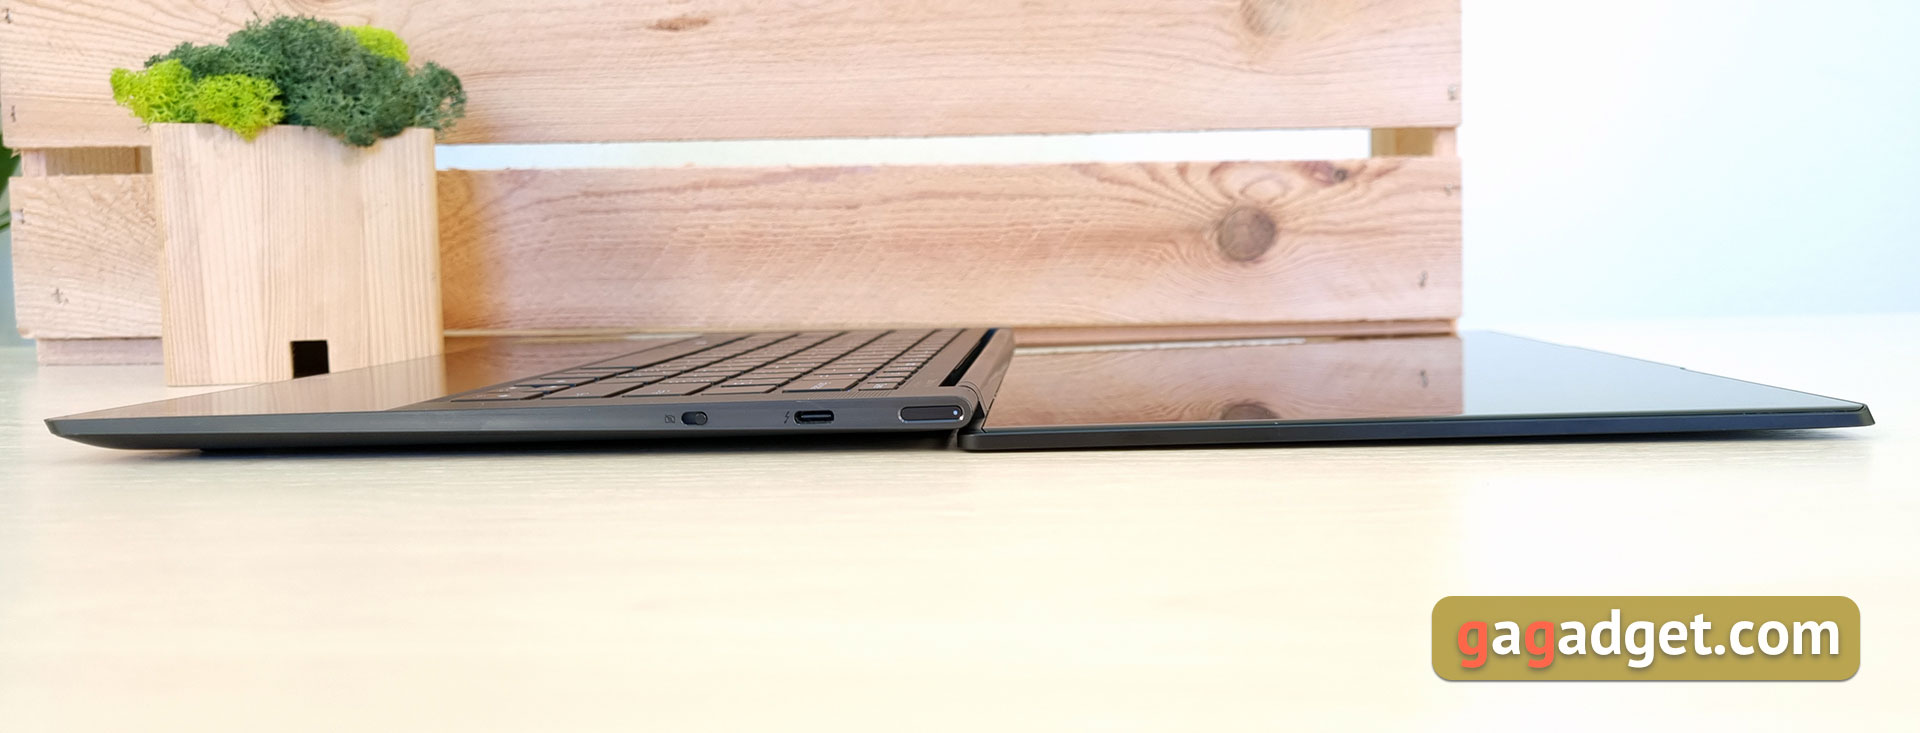 Lenovo Yoga Slim 9i Laptop Review-24